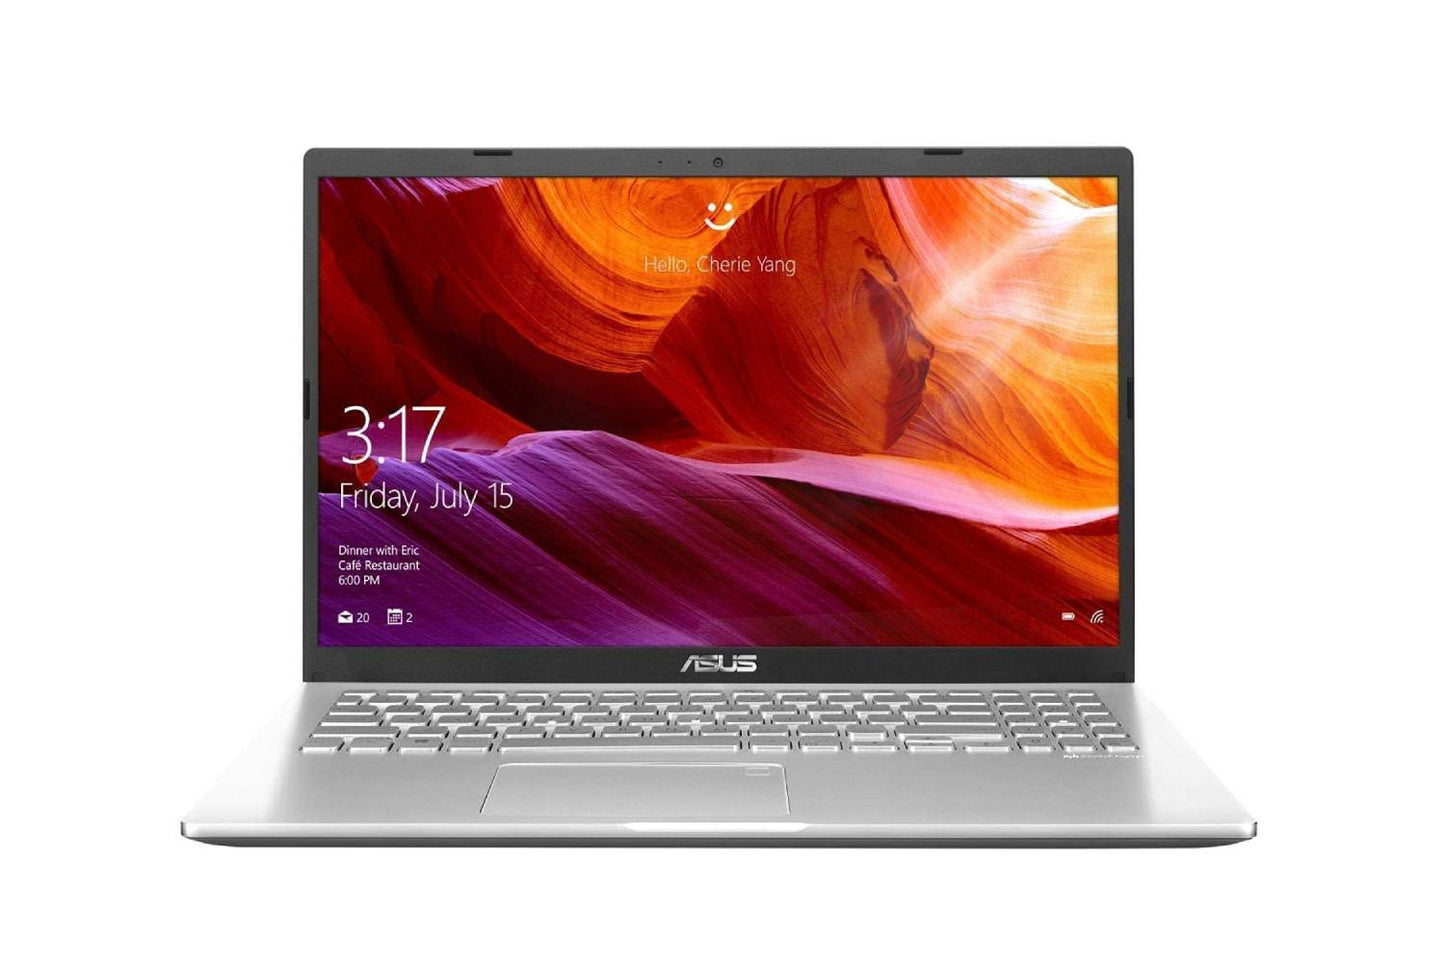 Asus X515E core i3 11th gen 256gb pcie ssd win 10 8GB RAM 15.6 inch HD Transparent silver Laptop-Laptops-ASUS-computerspace